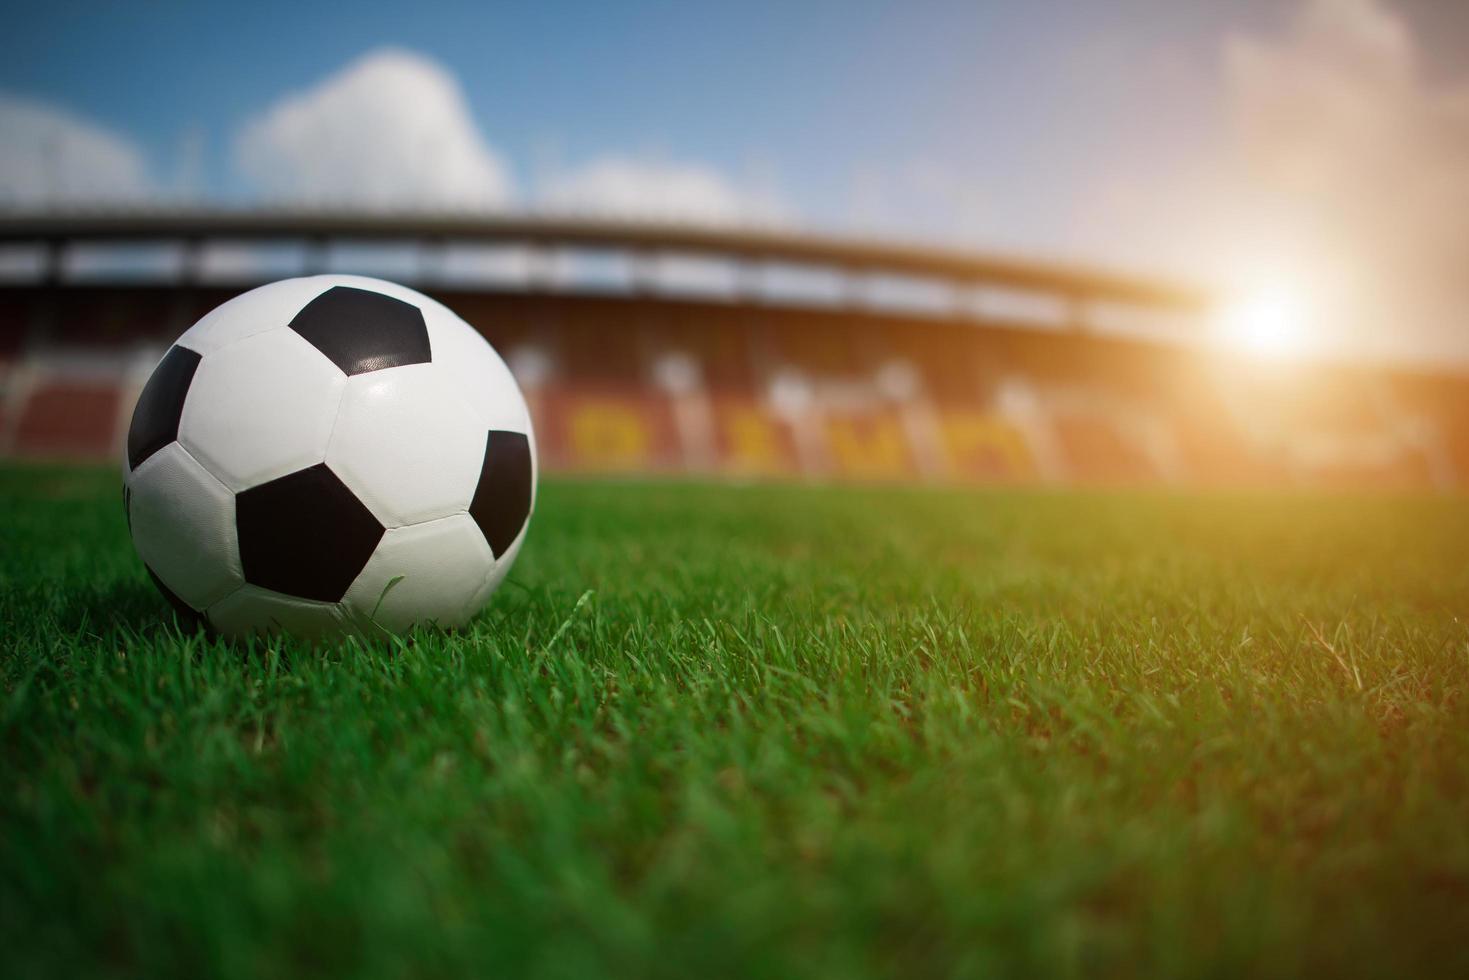 voetbal op gras met stadionachtergrond foto